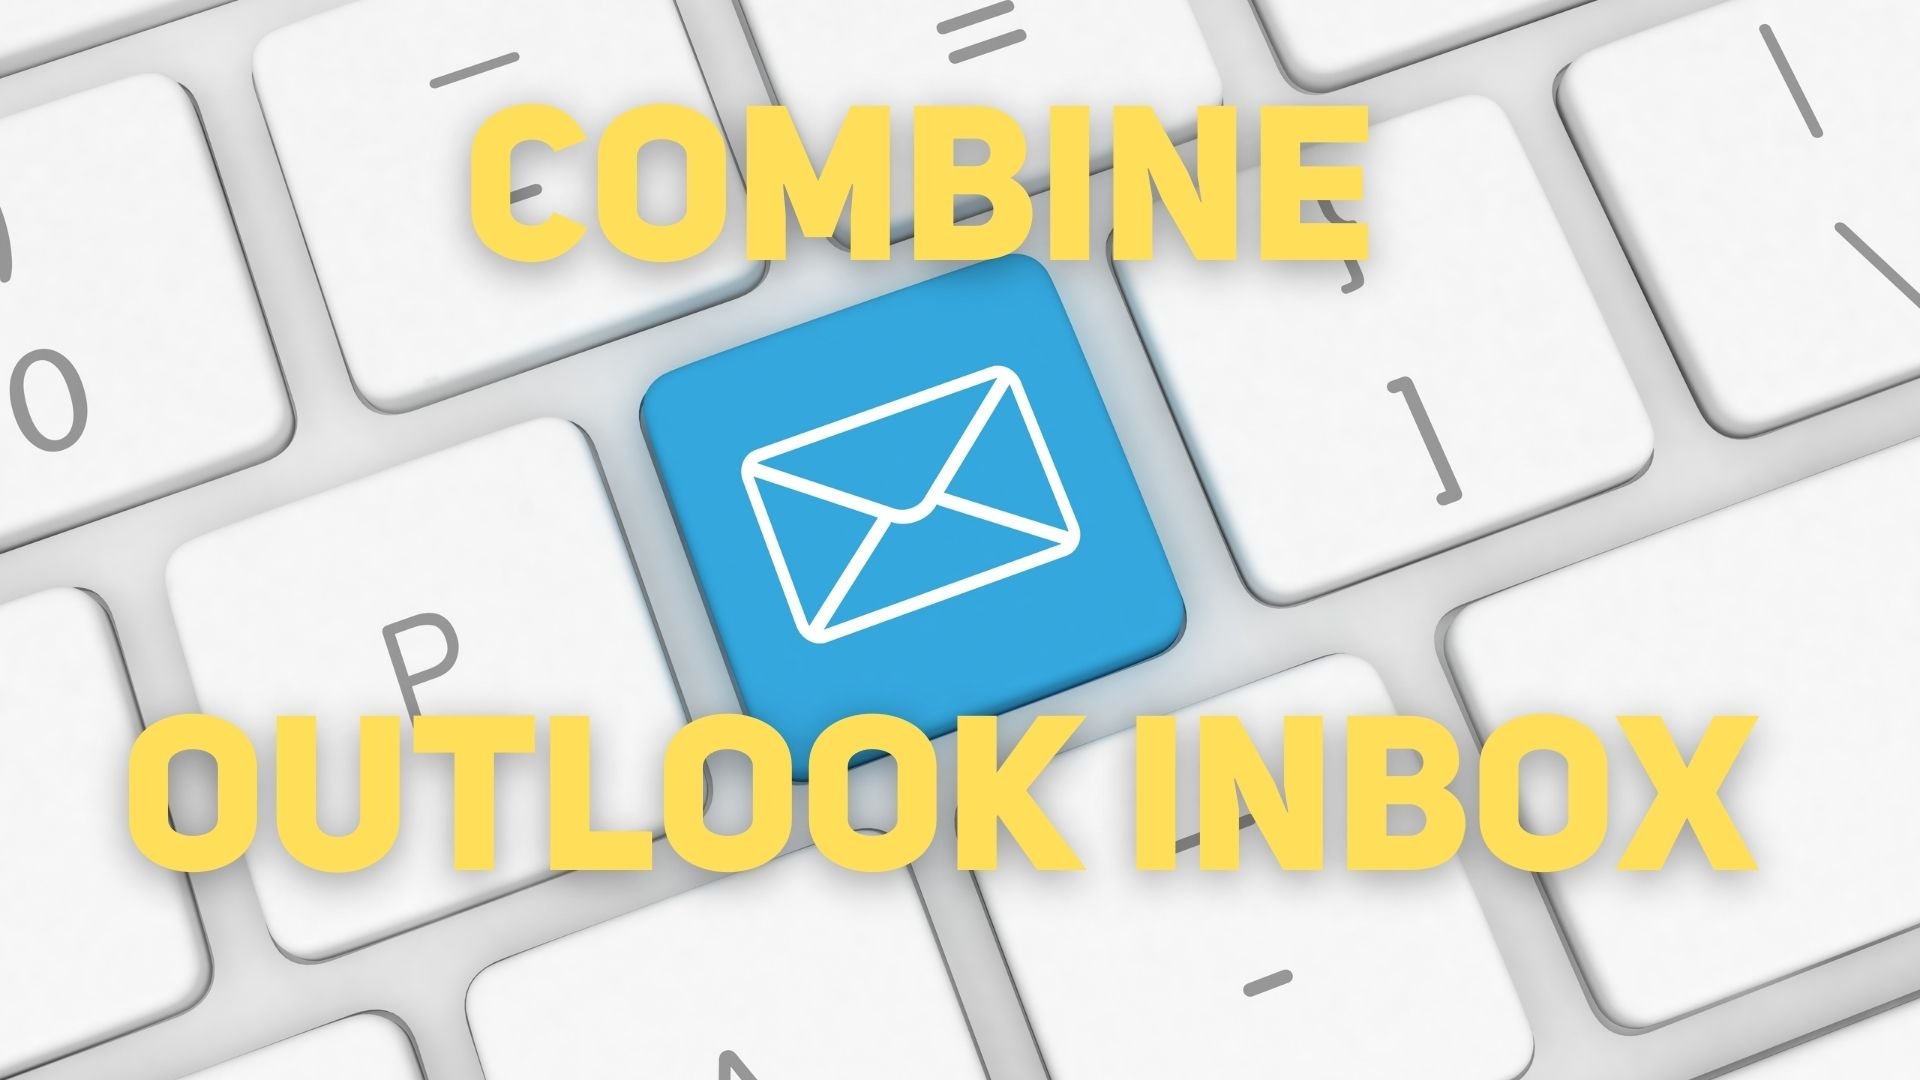 Combine Outlook Inbox